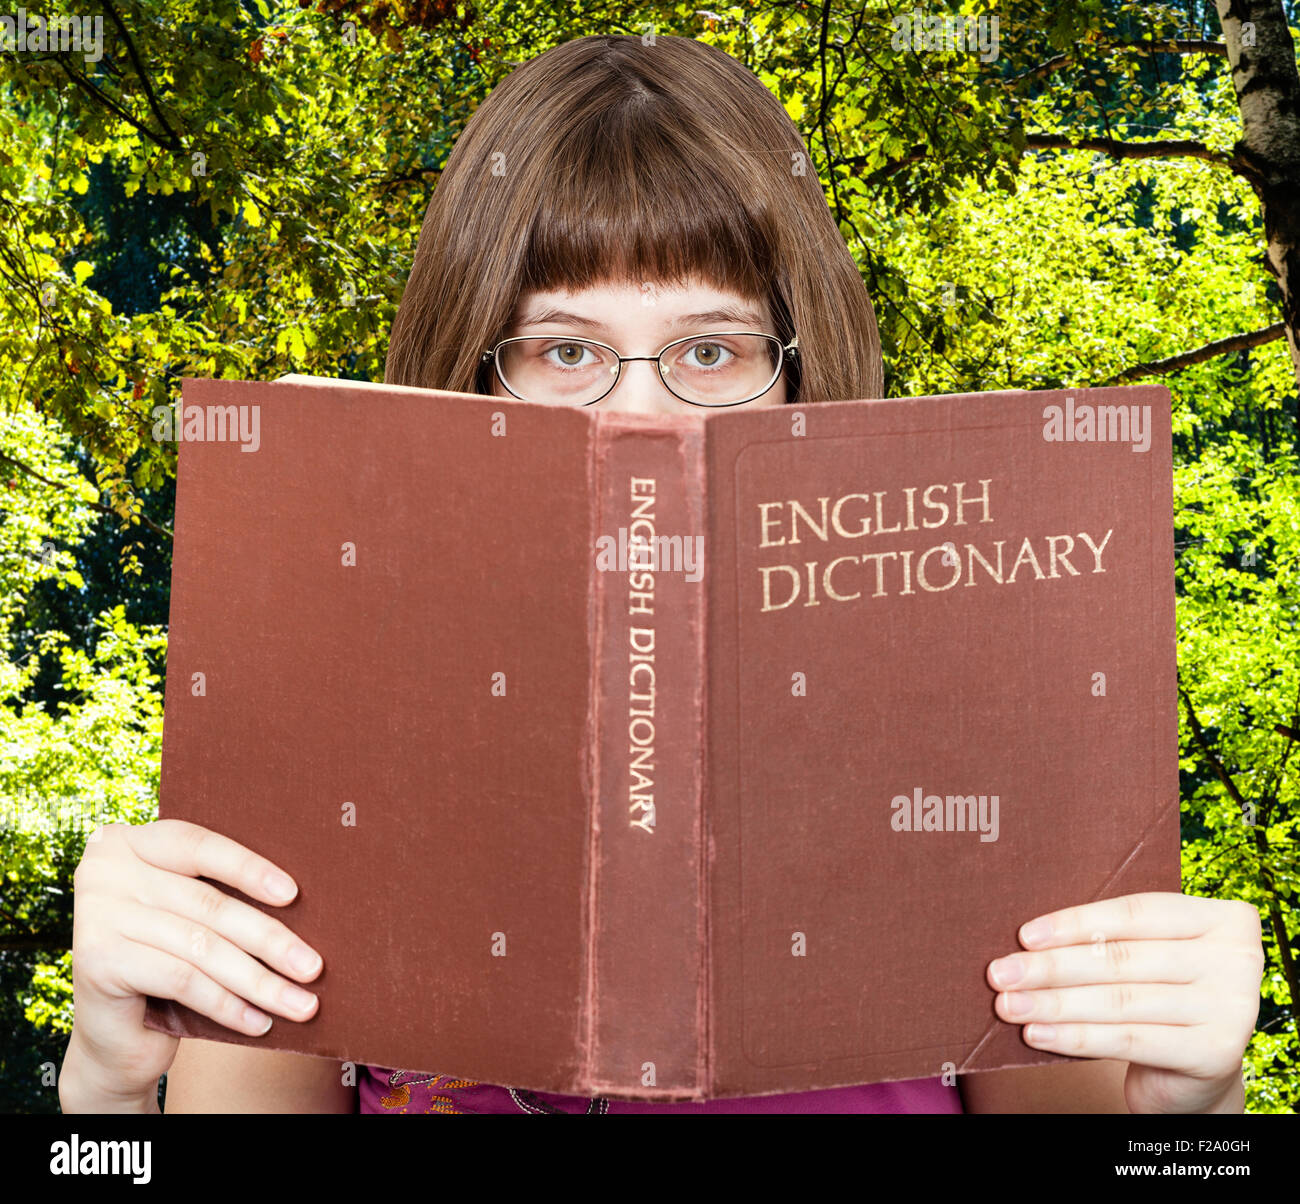 Mädchen mit Brille sieht über English Dictionary Buch mit grünen Sommer Wald auf Hintergrund Stockfoto